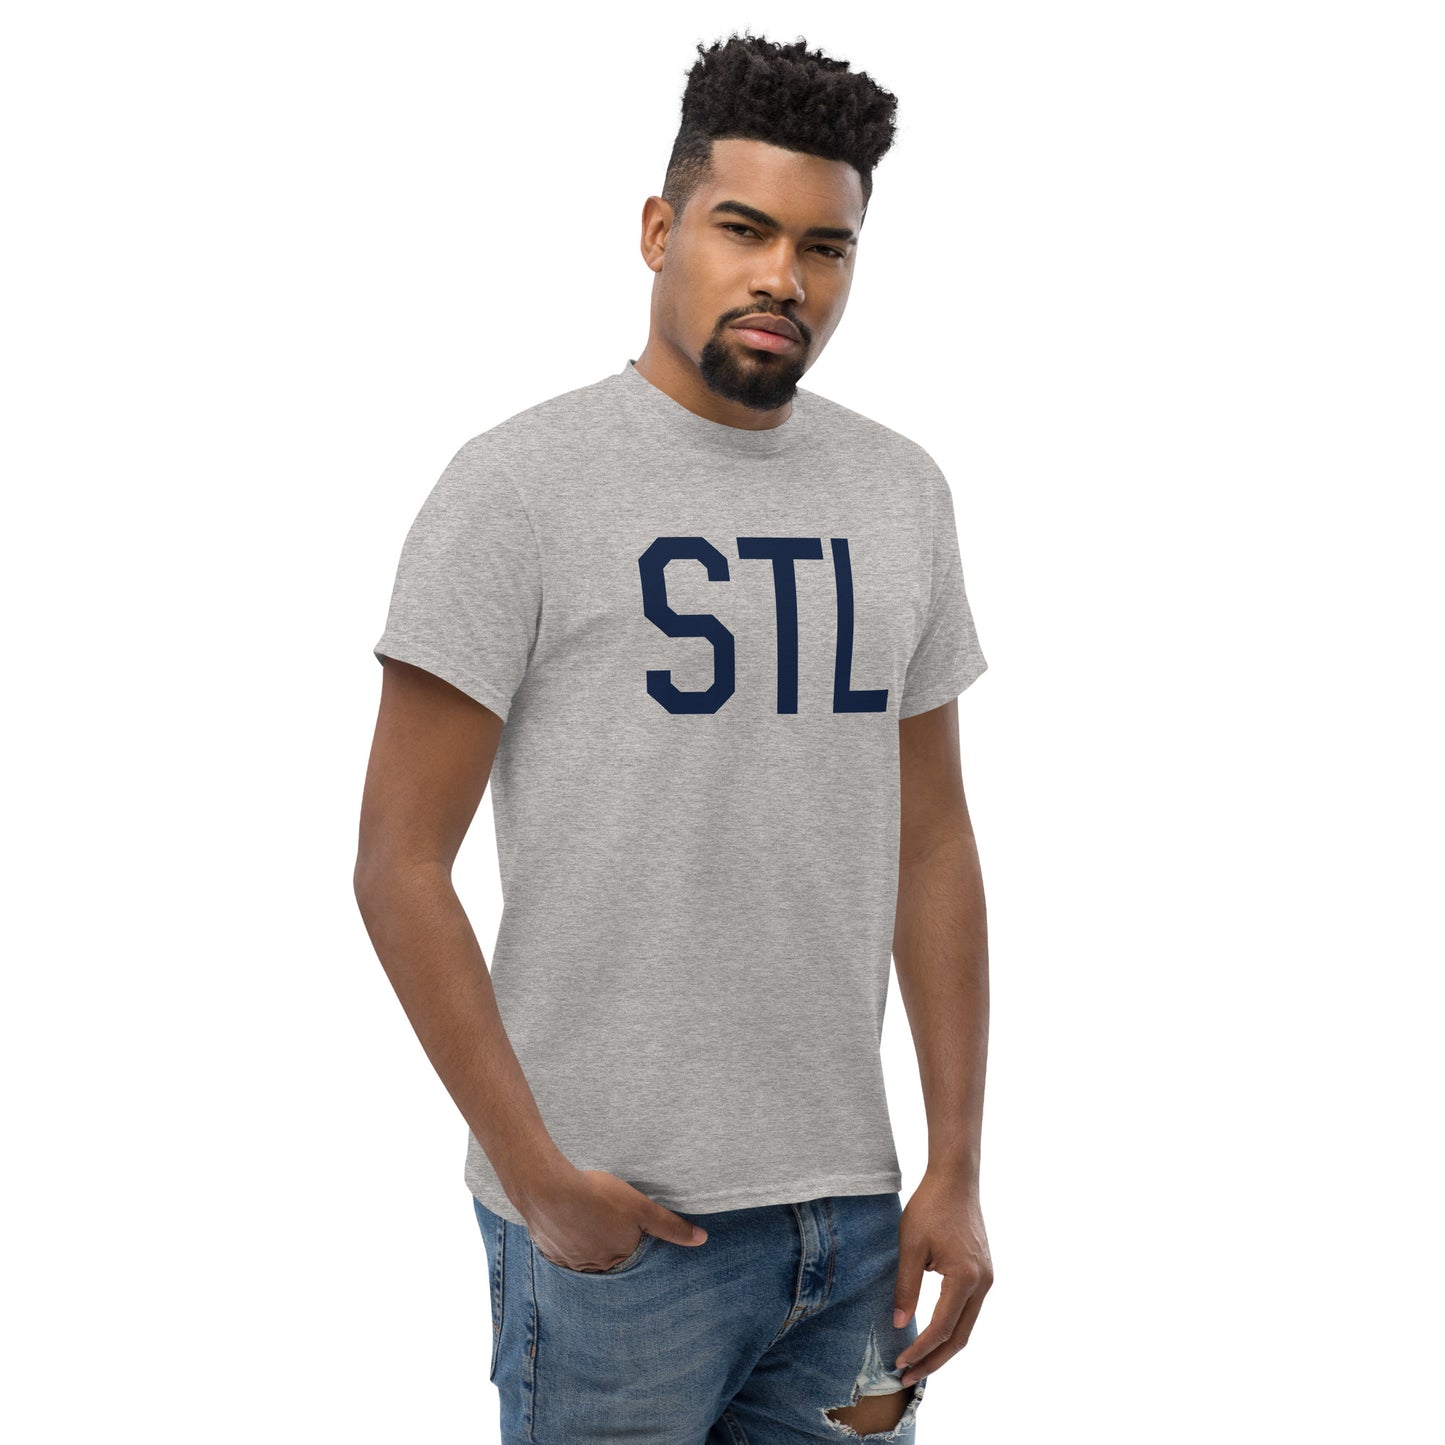 Aviation-Theme Men's T-Shirt - Navy Blue Graphic • STL St. Louis • YHM Designs - Image 08